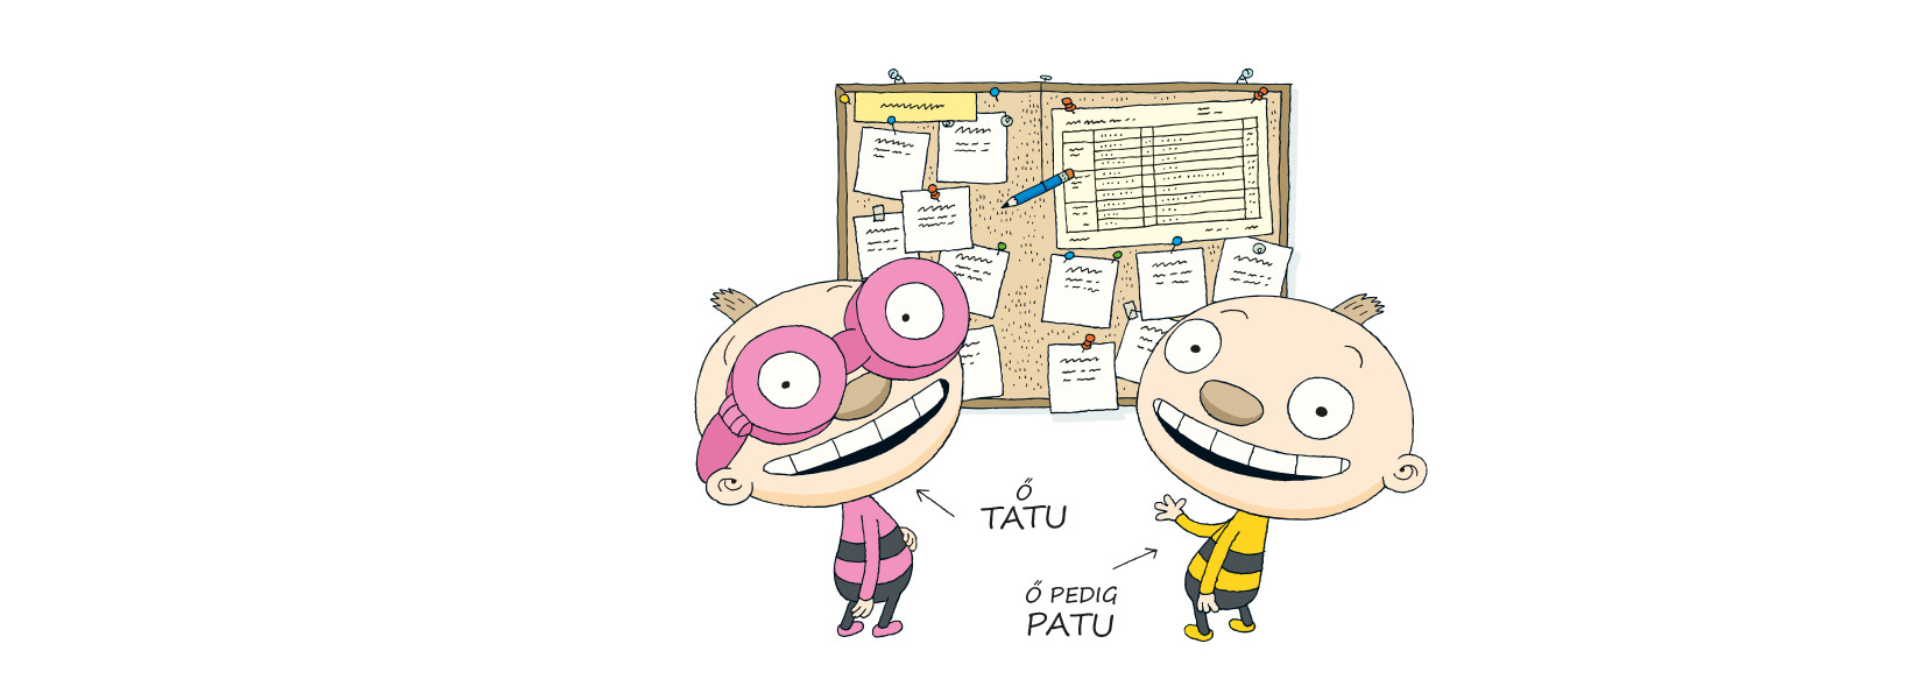 Tatu és Patu